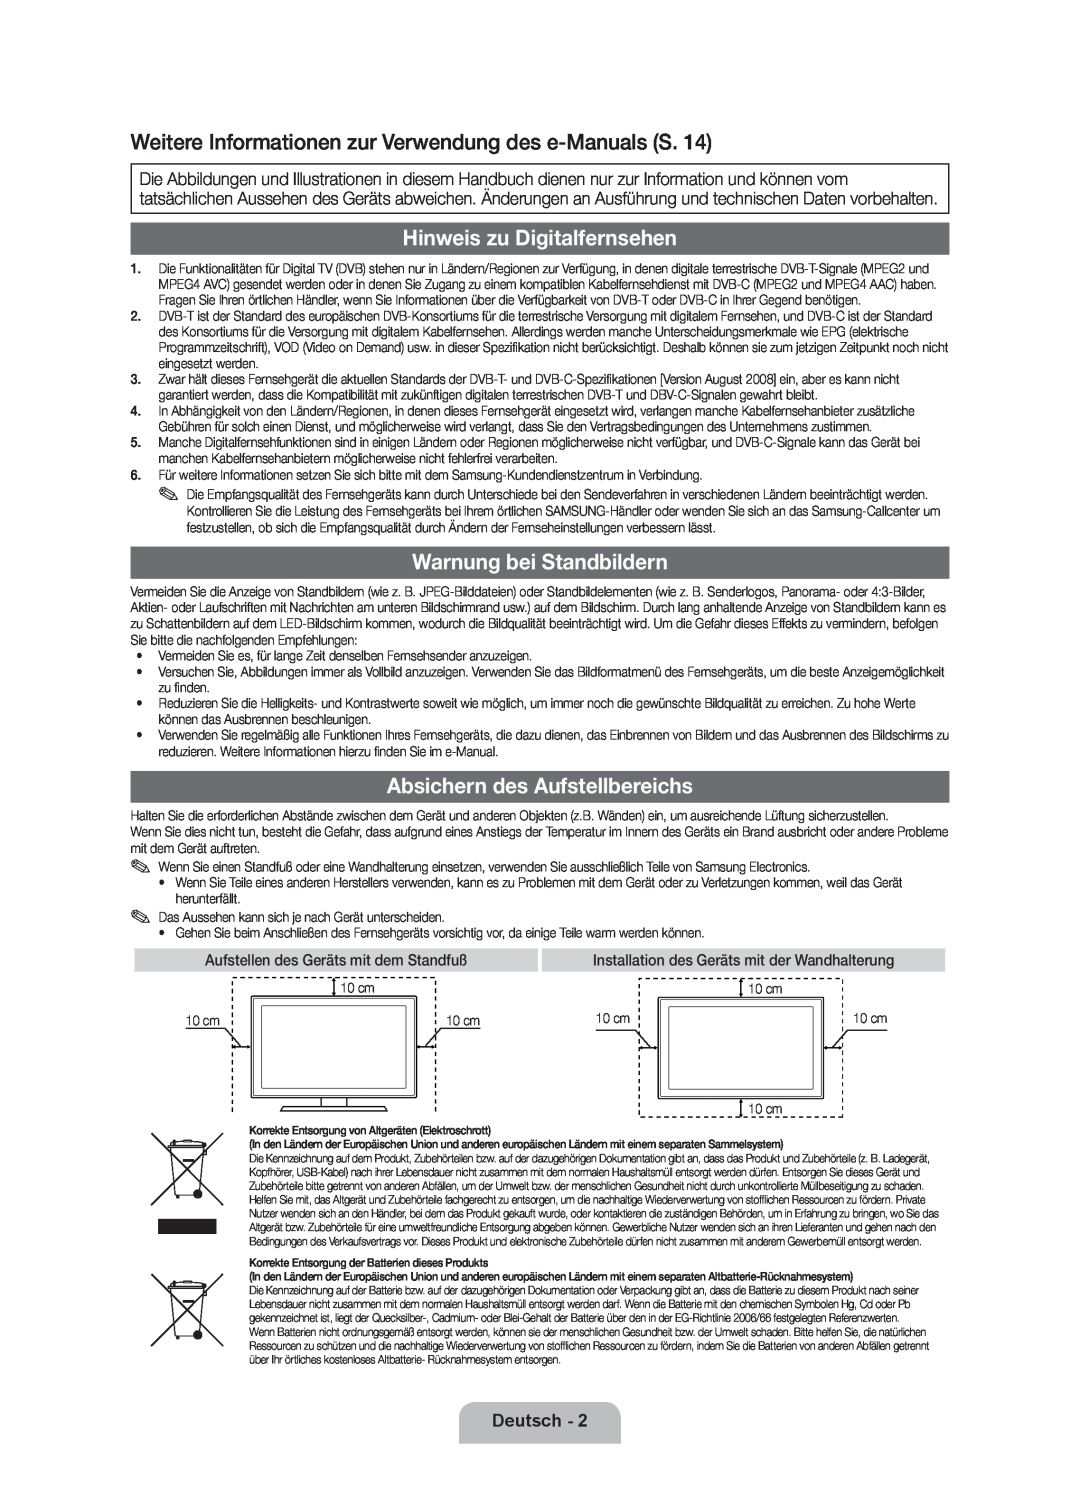 Samsung UE40D7000LSXZF manual Weitere Informationen zur Verwendung des e-Manuals S, Hinweis zu Digitalfernsehen, Deutsch 